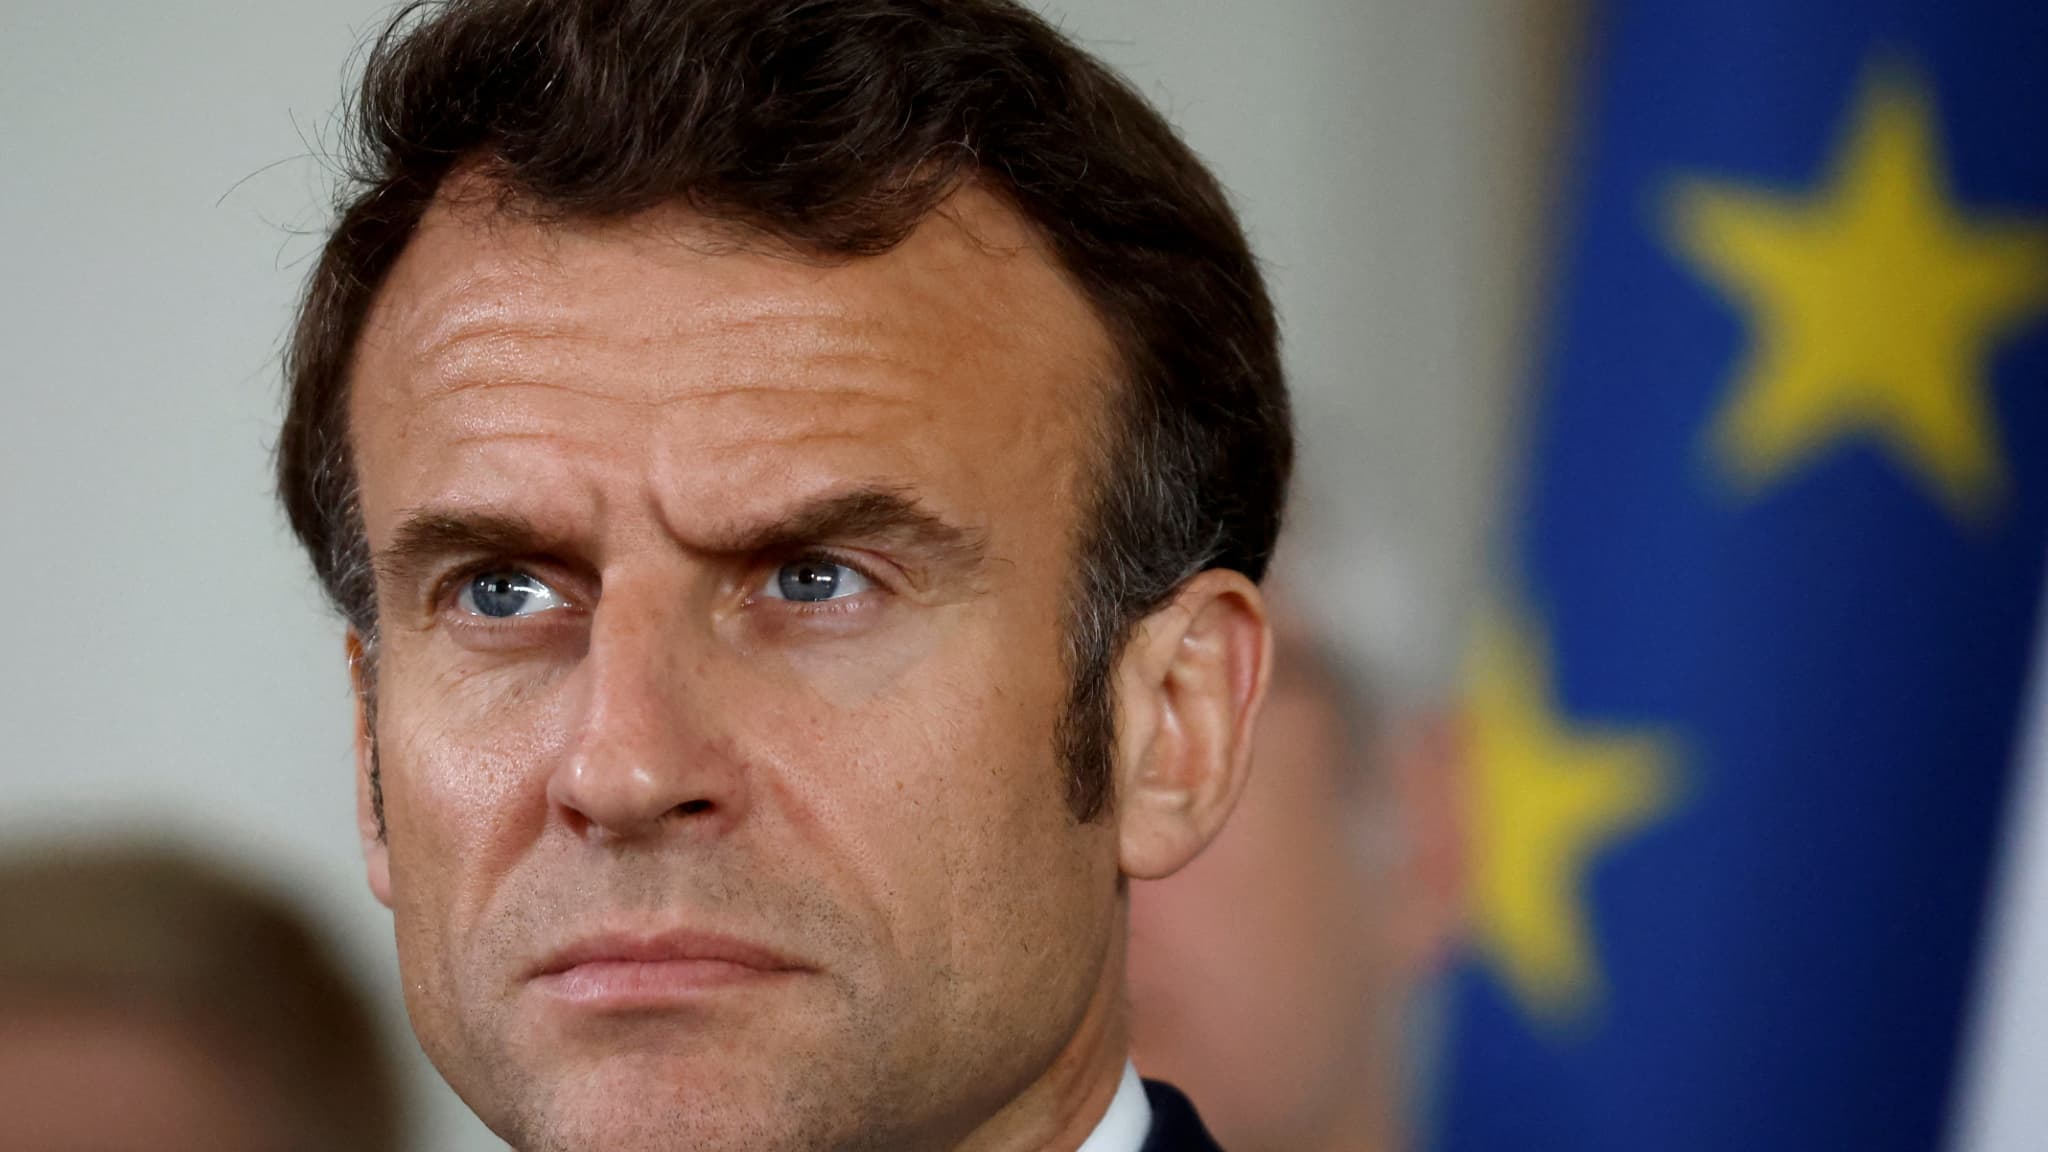 Diretta – Macron allo Stade de France: La sinistra considera “sproporzionato” il divieto di assembramento sindacale